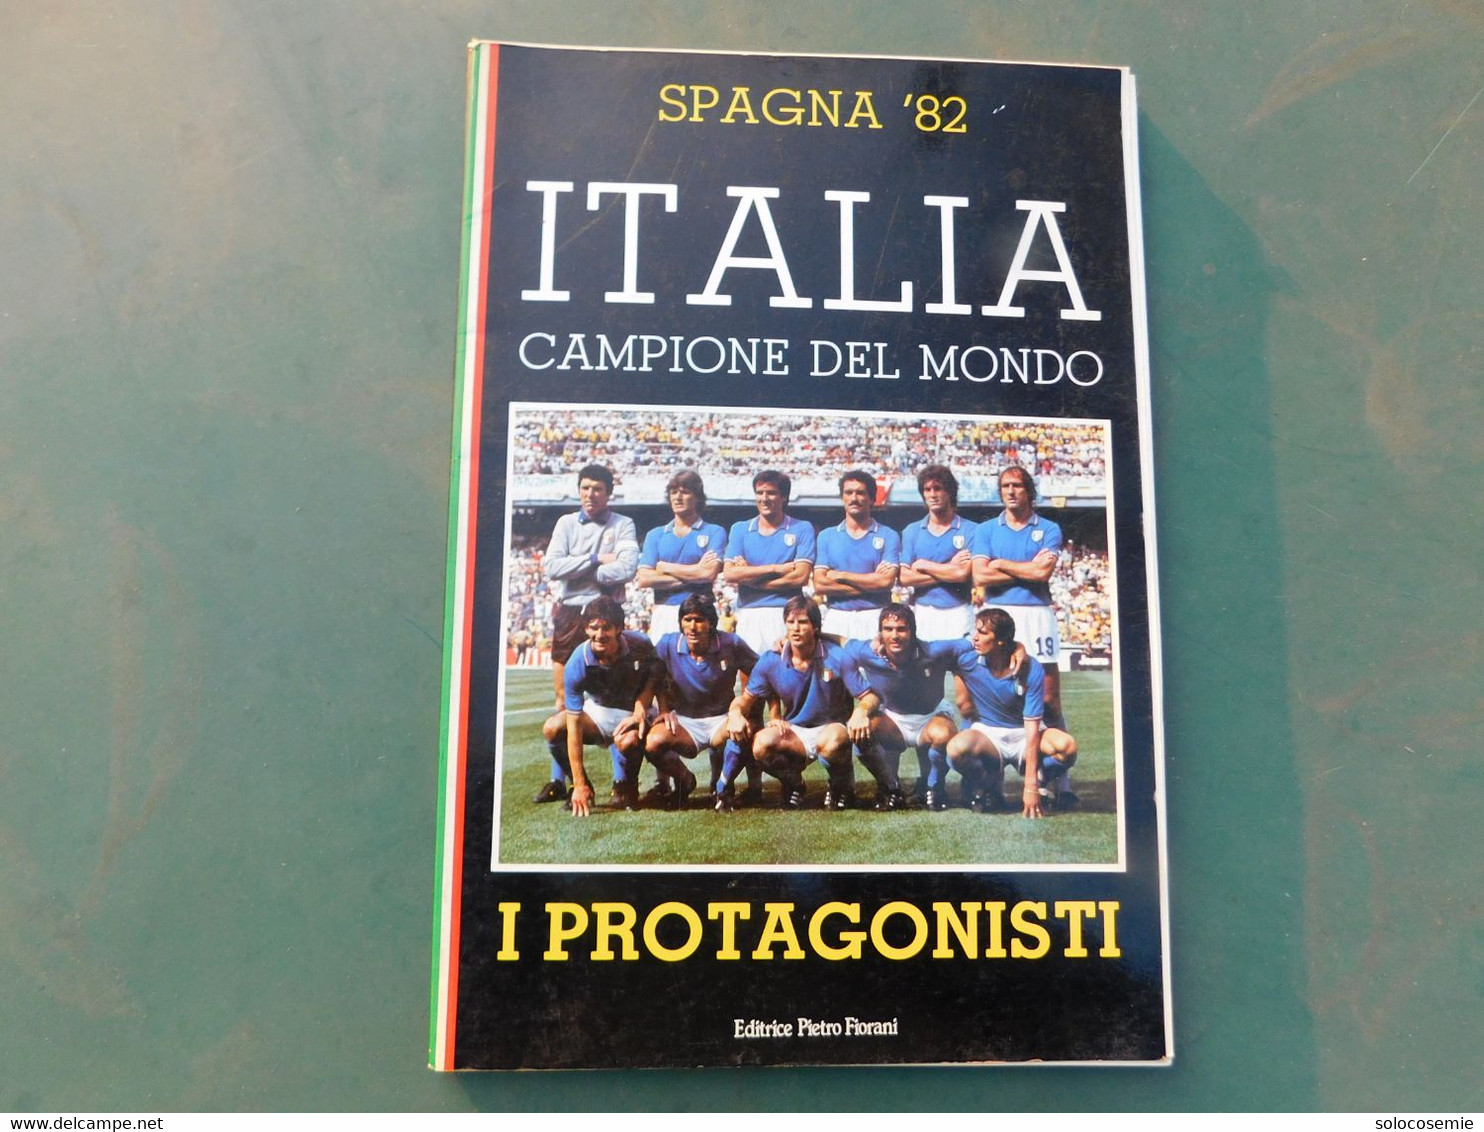 Spagna '82 - ITALIA CAMPIONE DEL MONDO  -I Protagonisti, Editrice Fiorani - To Identify